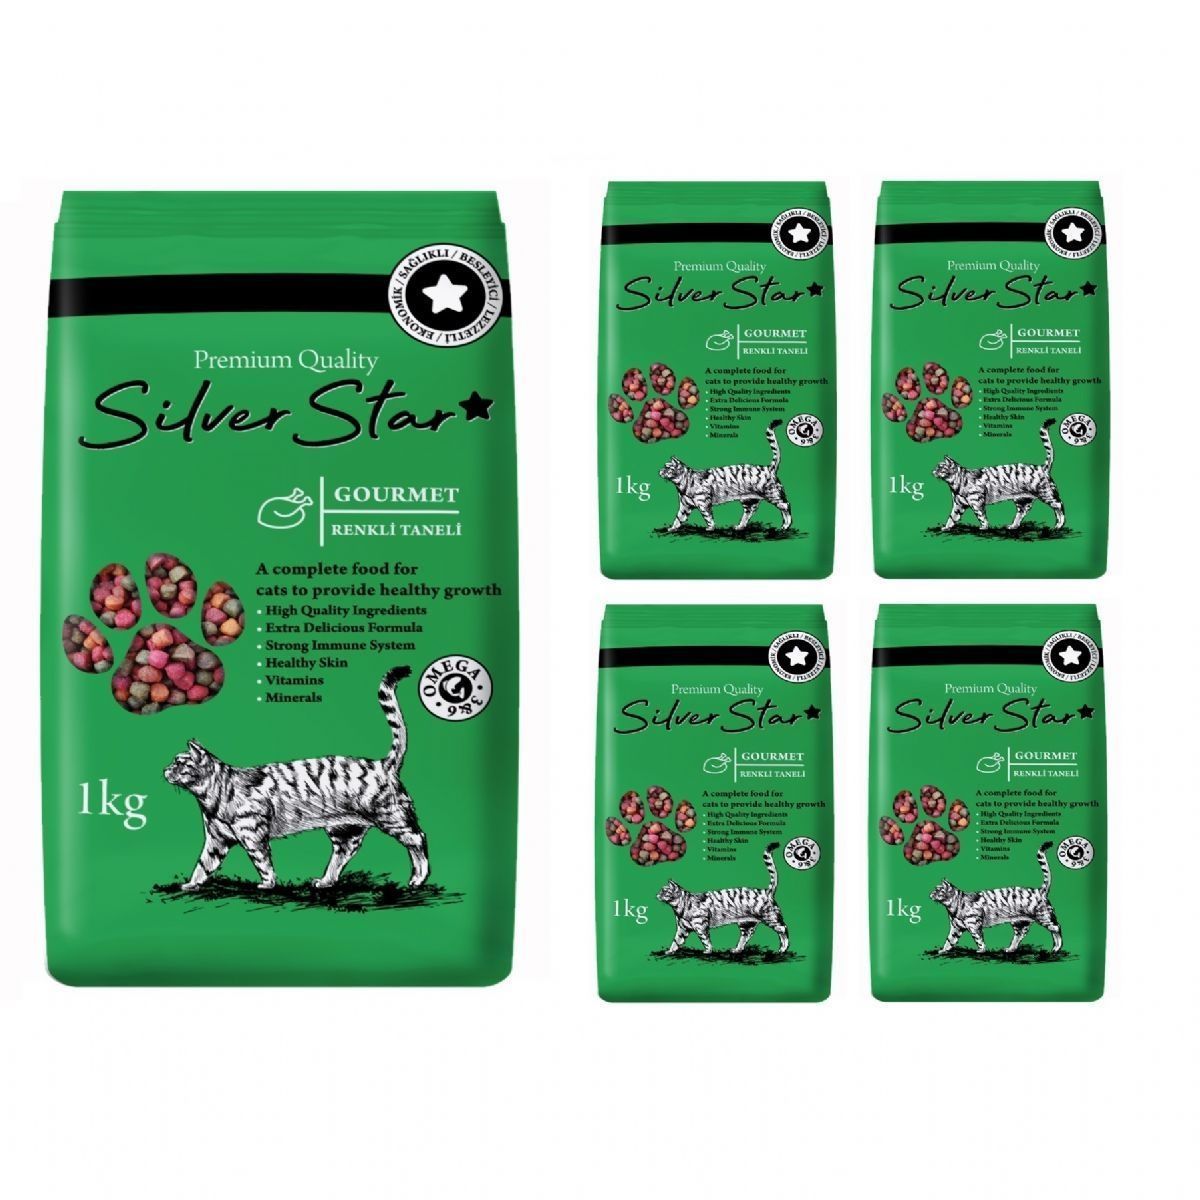 Yetişkin Kedi Mamaları | Silver Star Gourmet Multicolour Renkli Taneli Yetişkin Kedi Maması 1 Kg * 5 Adet | sstarg-5 | 